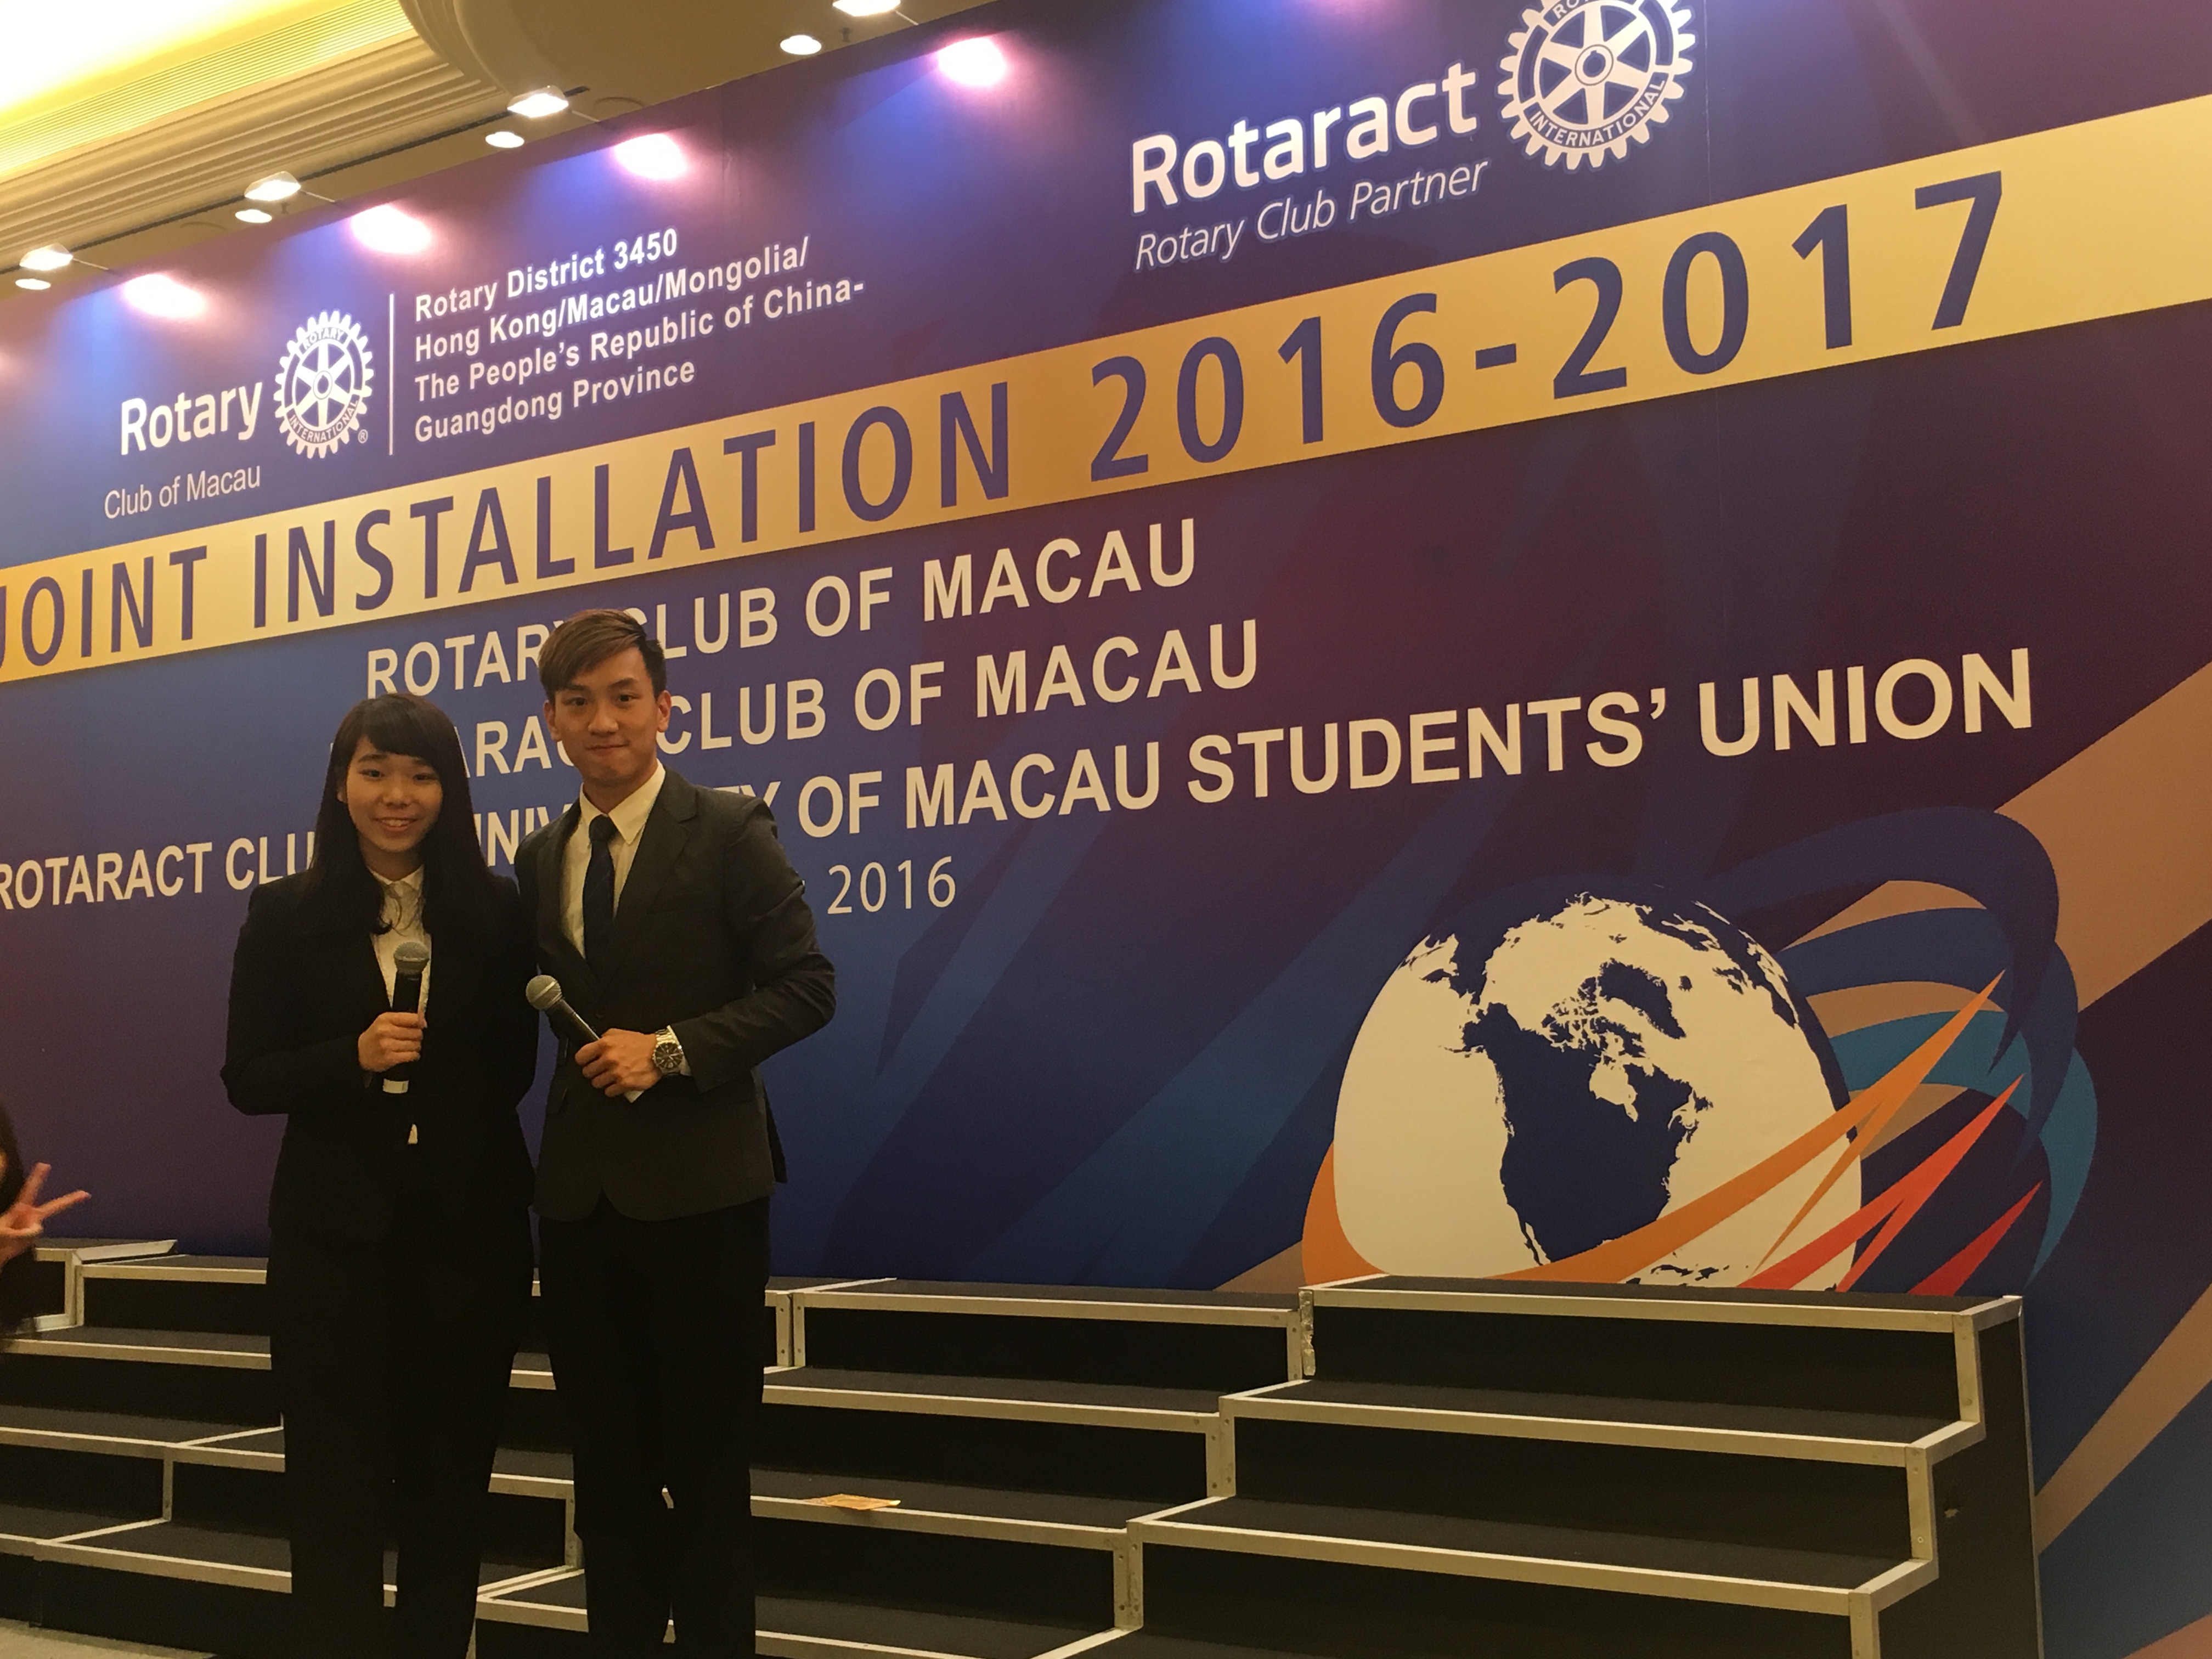 周啓陽 Elvis Chao司儀工作紀錄: Joint Installation of Rotary Club of Macau, Rotaract Club of Macao and Rotaract Club of UMSU (English)